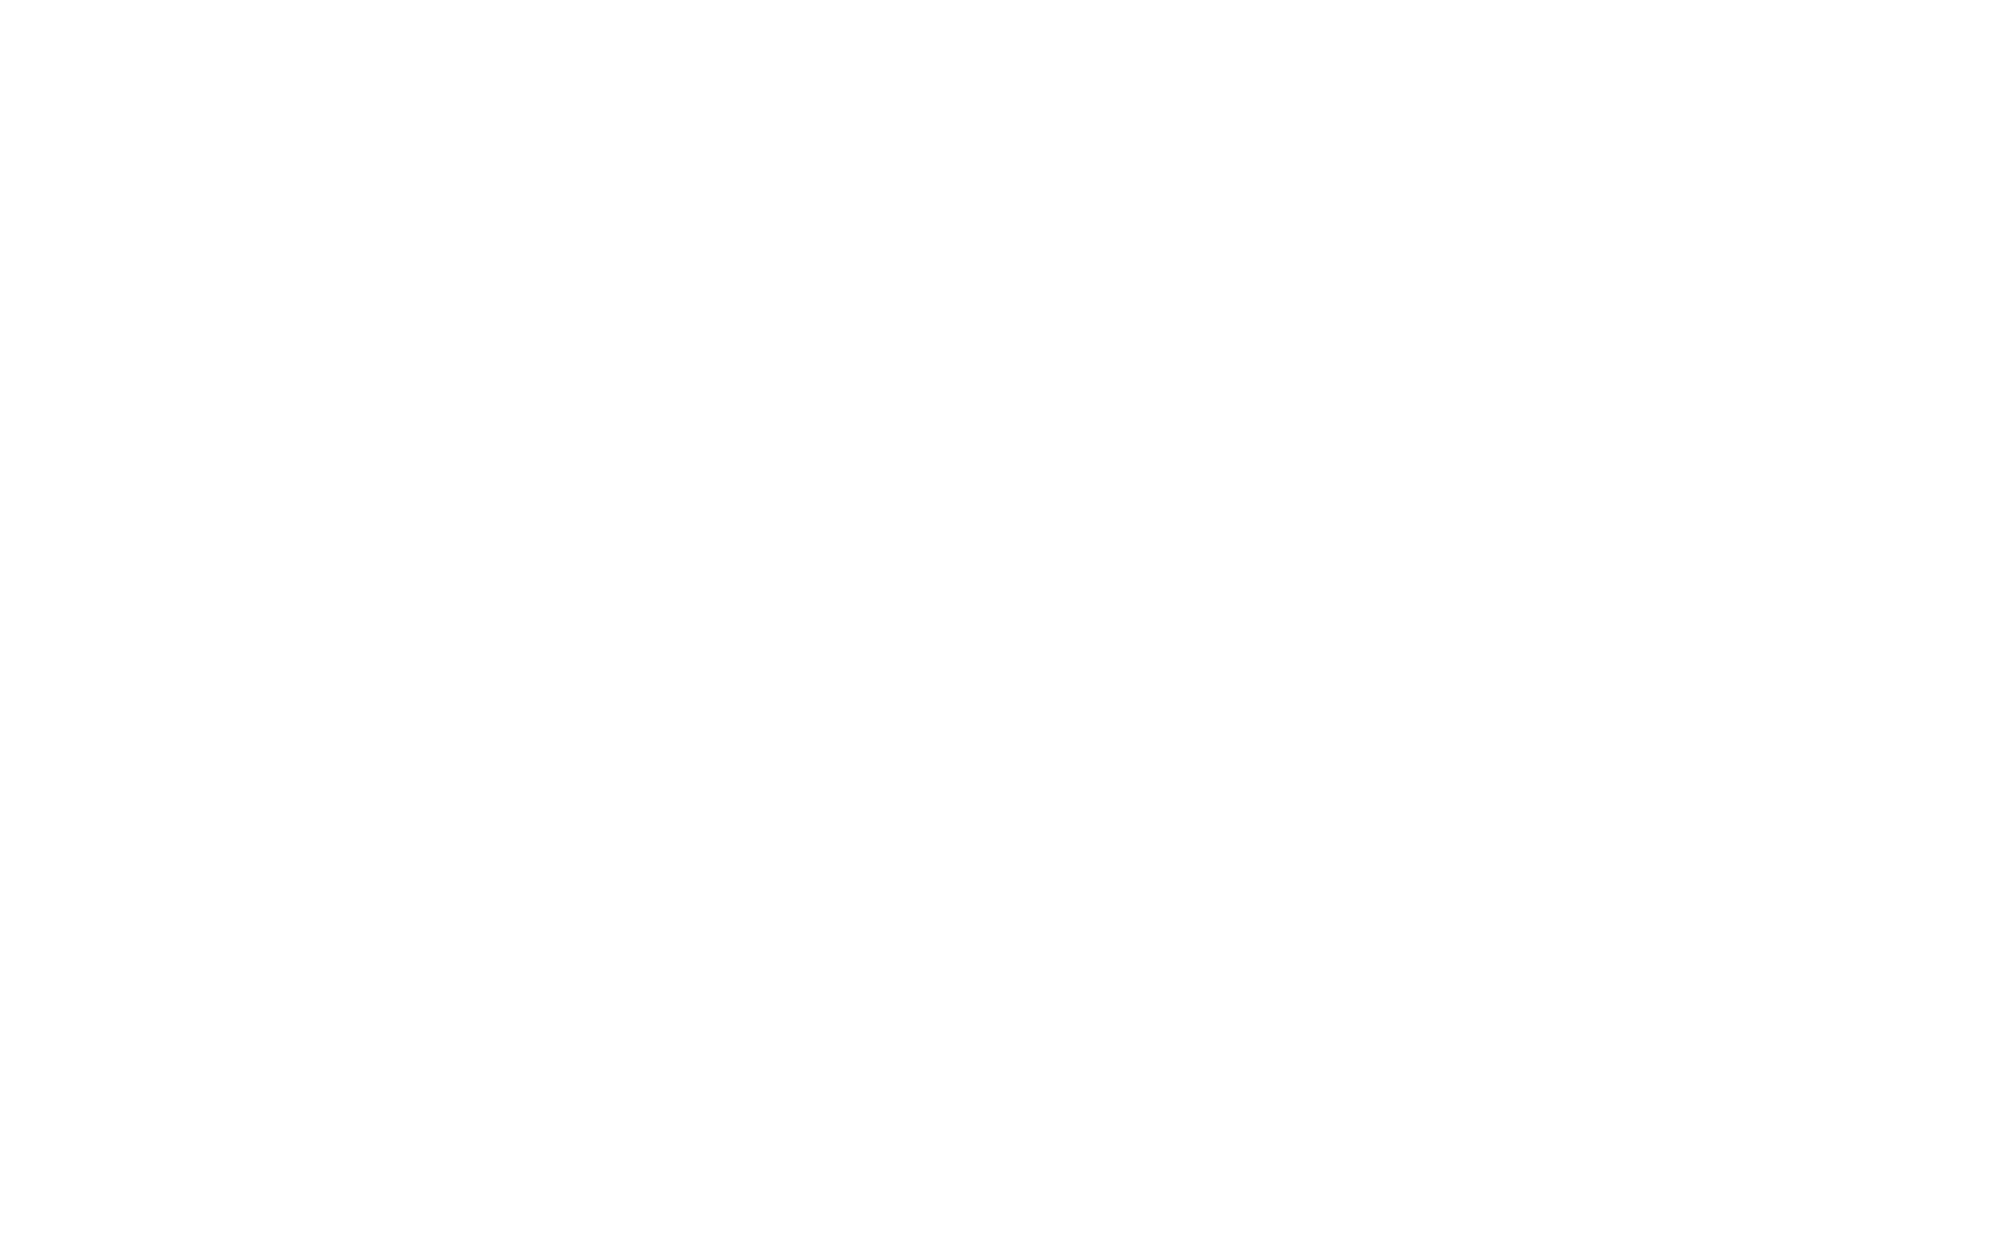 FIKRI FILMS